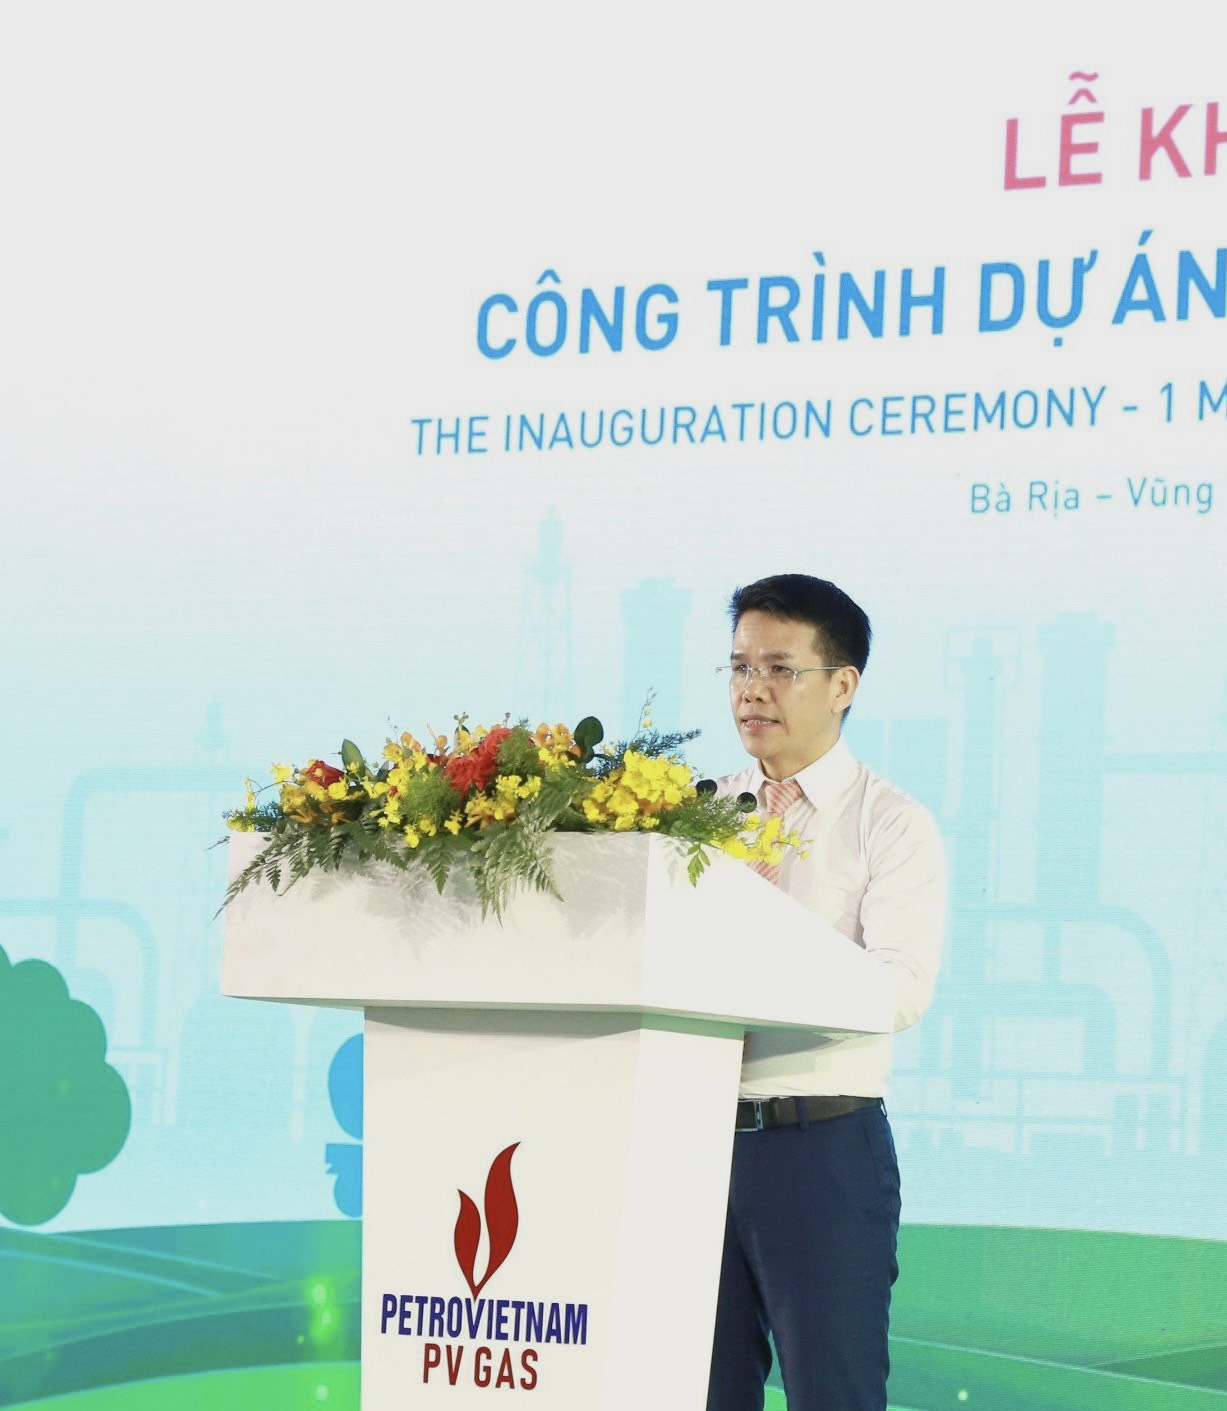 PV GAS khánh thành kho LNG đầu tiên tại Việt Nam - Ảnh 4.